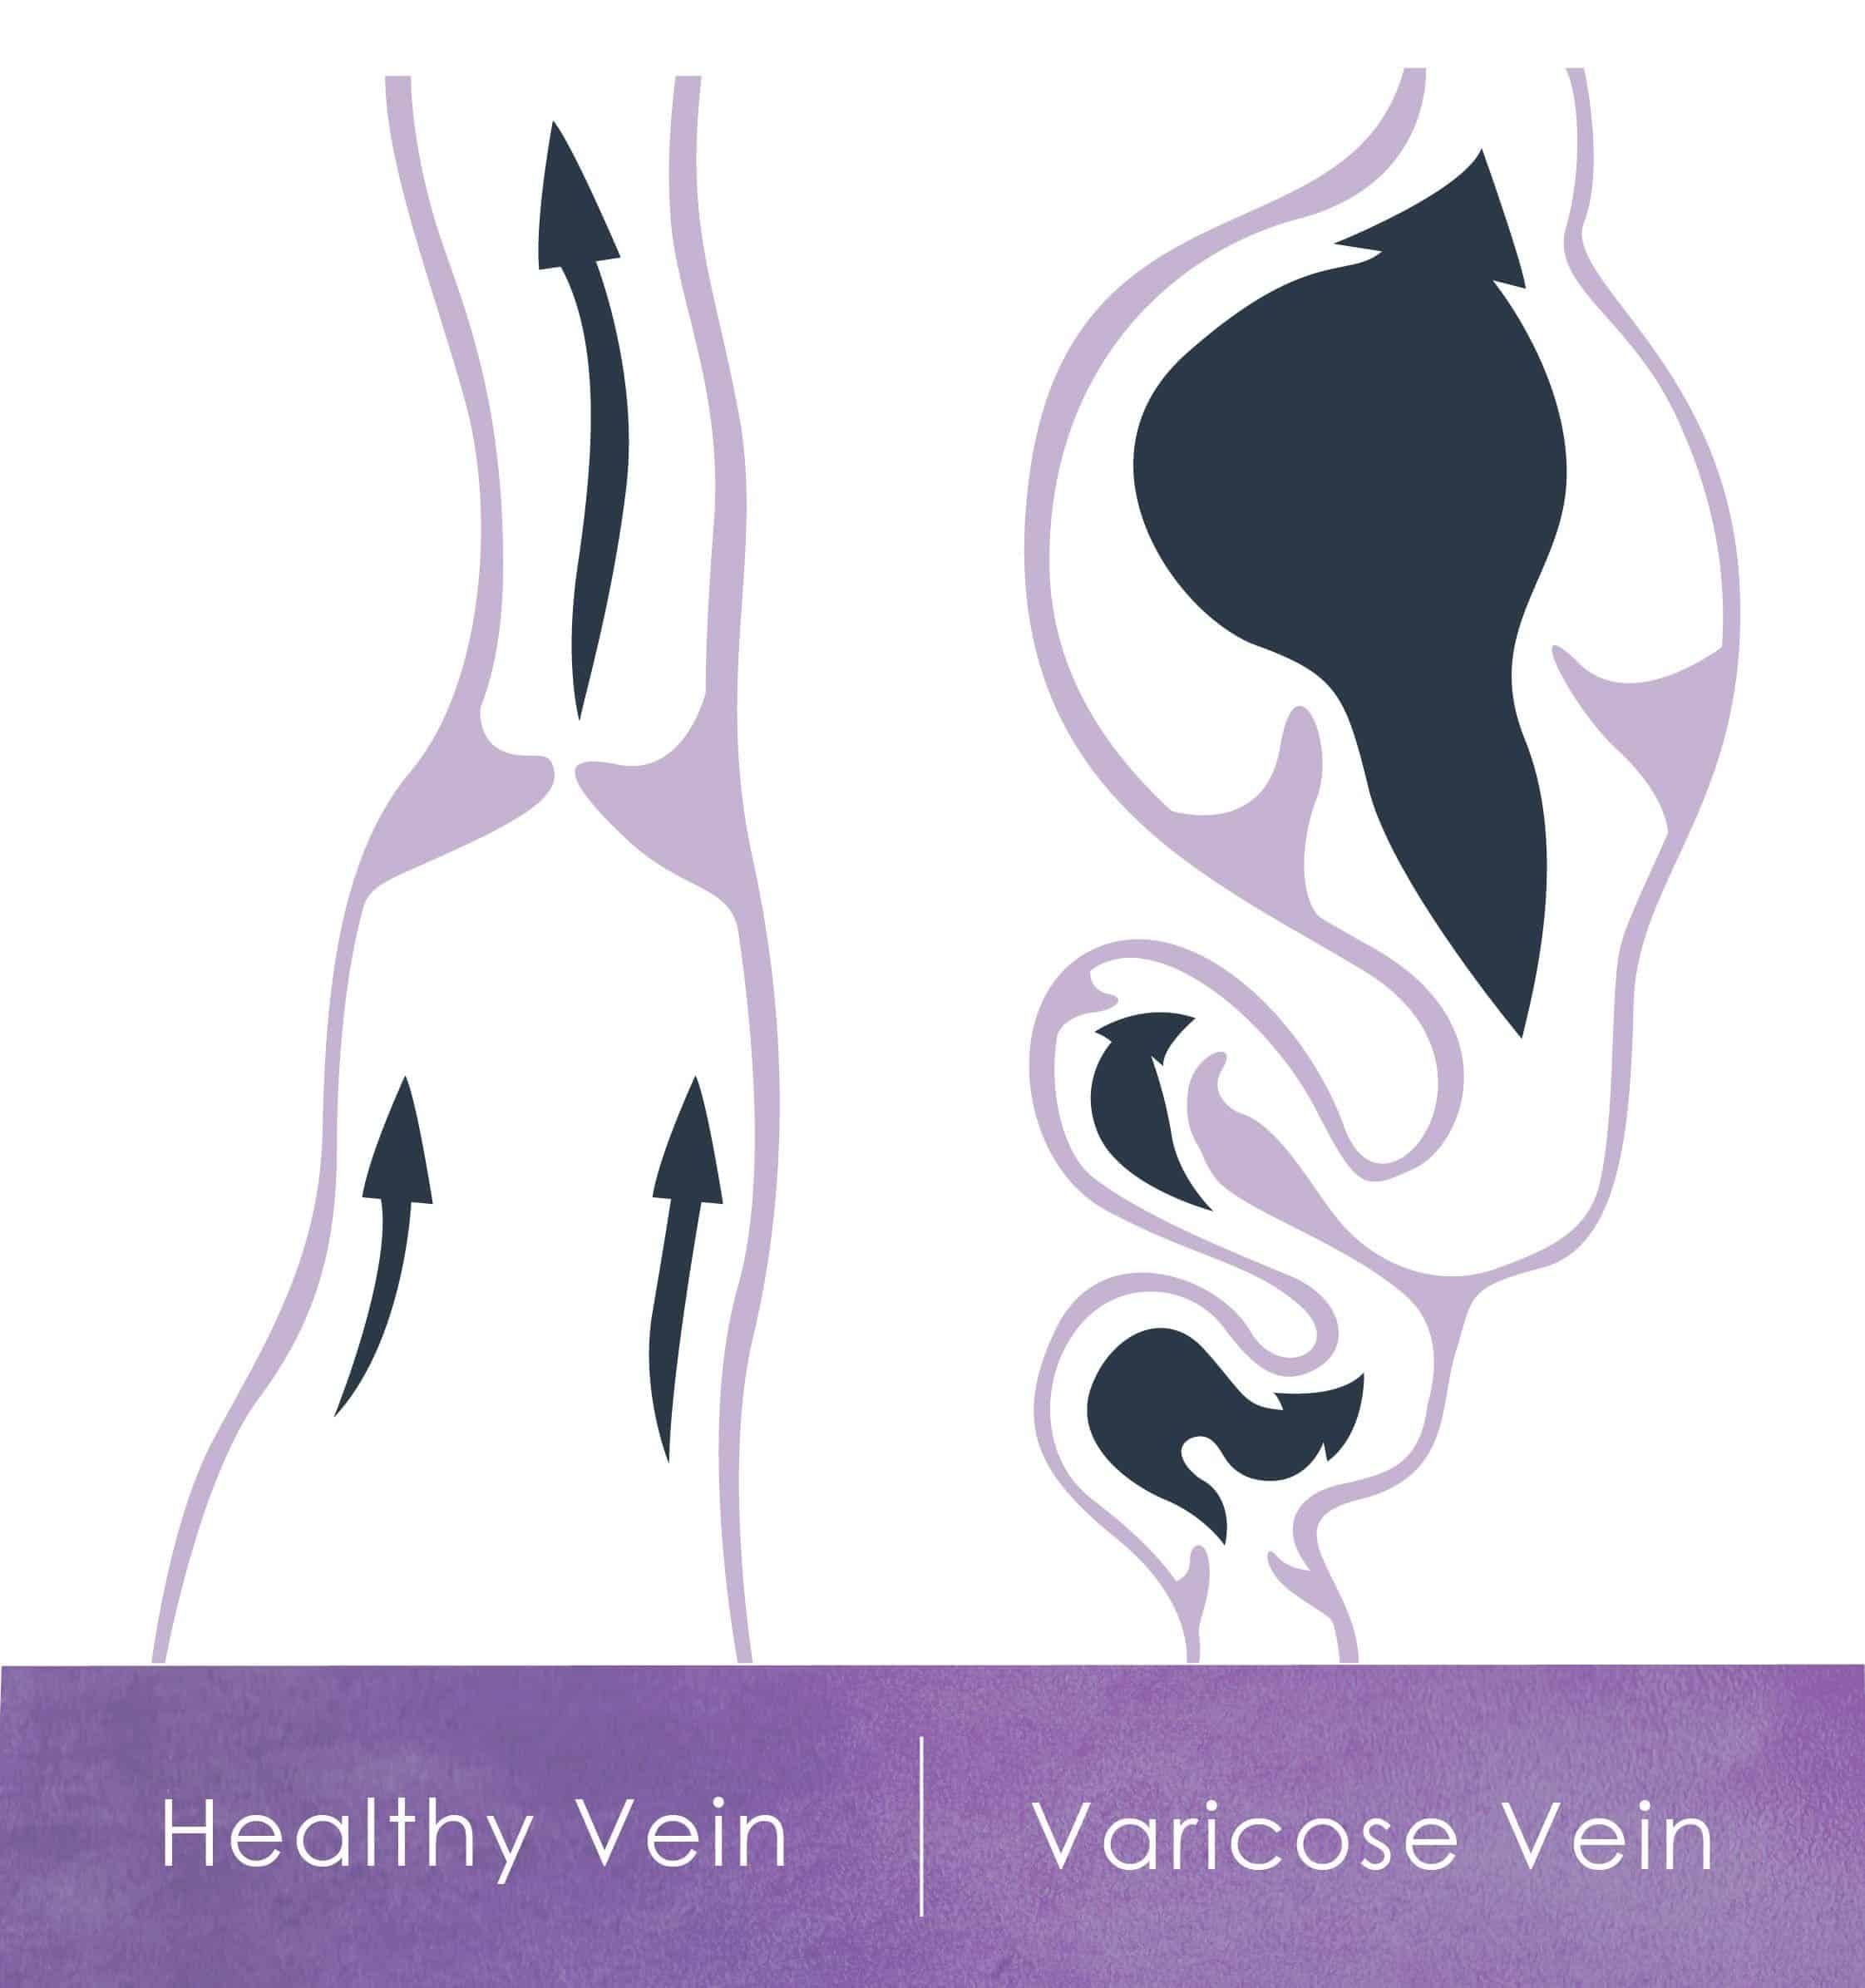 Diagram of healthy vs varicose vein